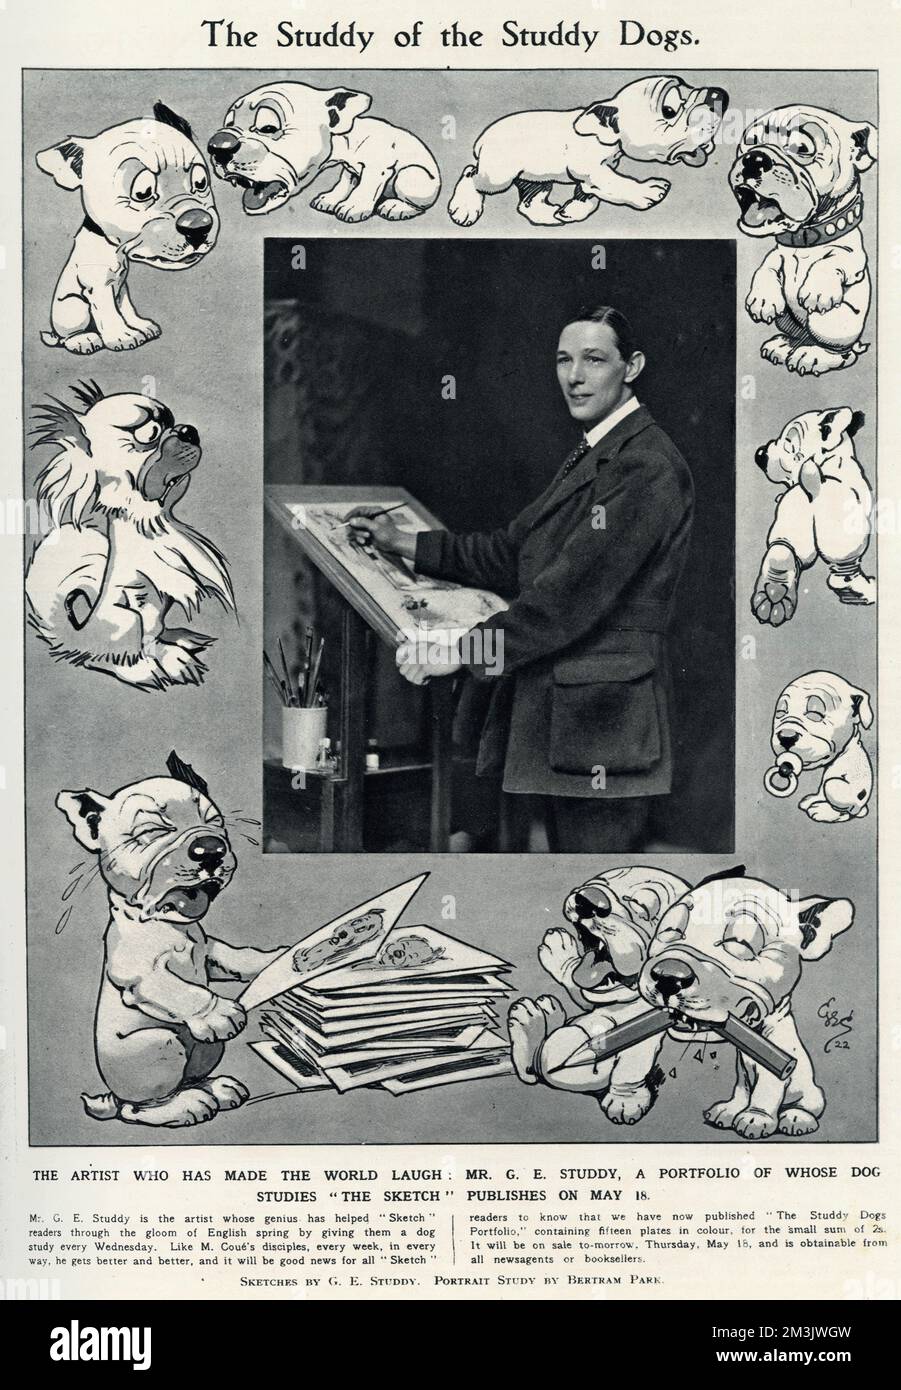 George Ernest Studdy (1878 - 1948), der berühmte Sketch-Künstler und -Schöpfer von Bonzo, umgeben von verschiedenen Zeichnungen seiner Schöpfung. „Bonzo“, ein kleiner Hund mit untertassenähnlichen Augen und wahlloser Zucht, der 1922 erstmals in der Skizze erschien. Der „Bonzo“-Wahnsinn durchwühlte die Welt und führte zu Postkarten, Einjahreszeitschriften, Spielzeug und anderen Waren. Studdy produzierte auch vor und nach Bonzo eine große Menge Arbeit für The Sketch, einschließlich seiner späteren Erschaffung, Ooloo, die Katze. Seine frühen Zeichentrickhunde waren einfach als „Studdy Dog“ bekannt, bis die Leser einen Namen verlangten und Bruce Ingram, der ILN-Redakteur, s Stockfoto